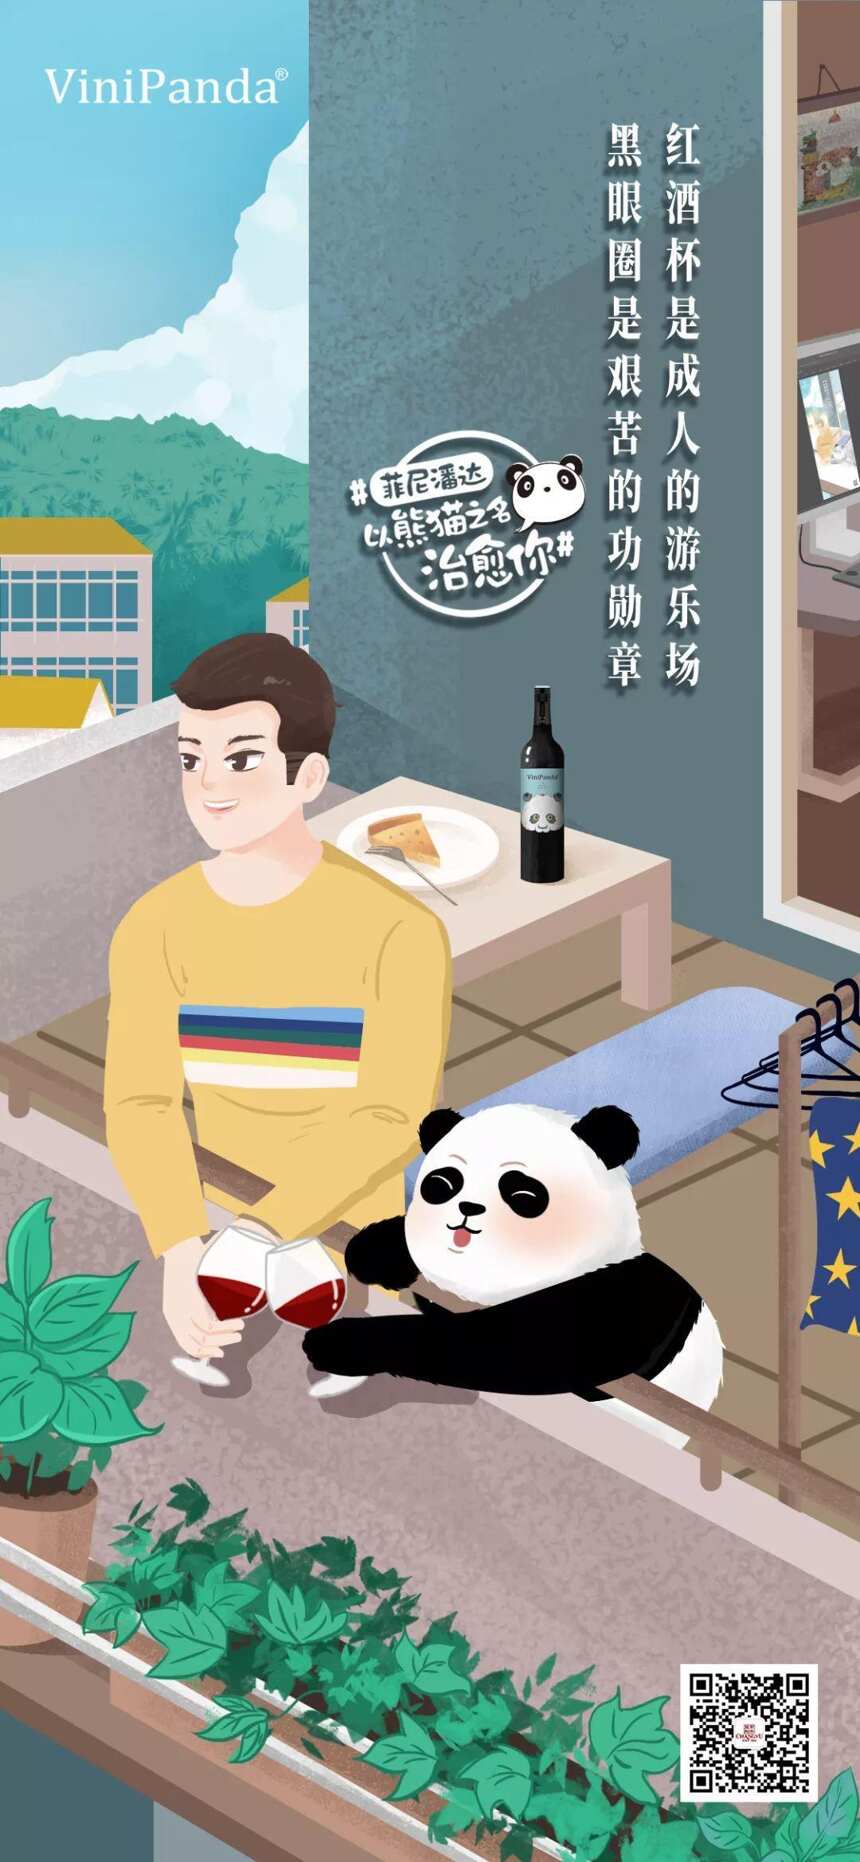 生活不如意十有八九，不妨撸撸熊猫喝喝酒